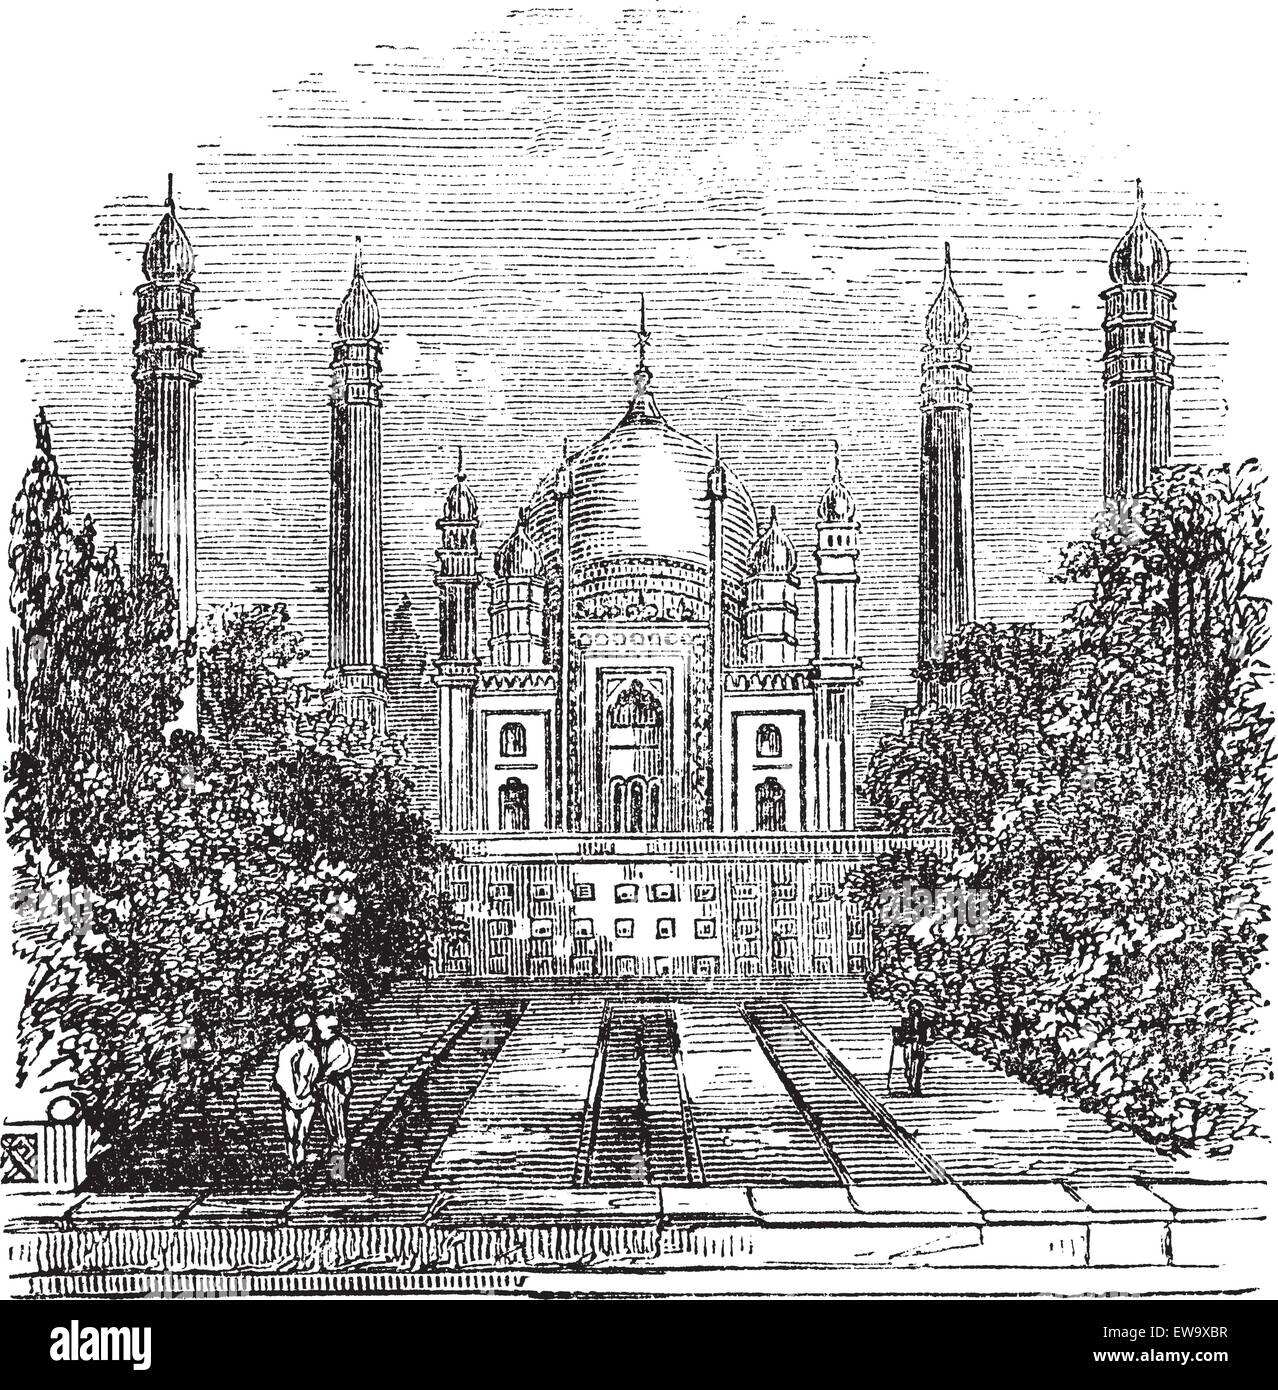 La Moschea Badshahi a Lahore, Pakistan, durante il 1890s, vintage incisione. Vecchie illustrazioni incise della moschea Badshahi mostra c Illustrazione Vettoriale